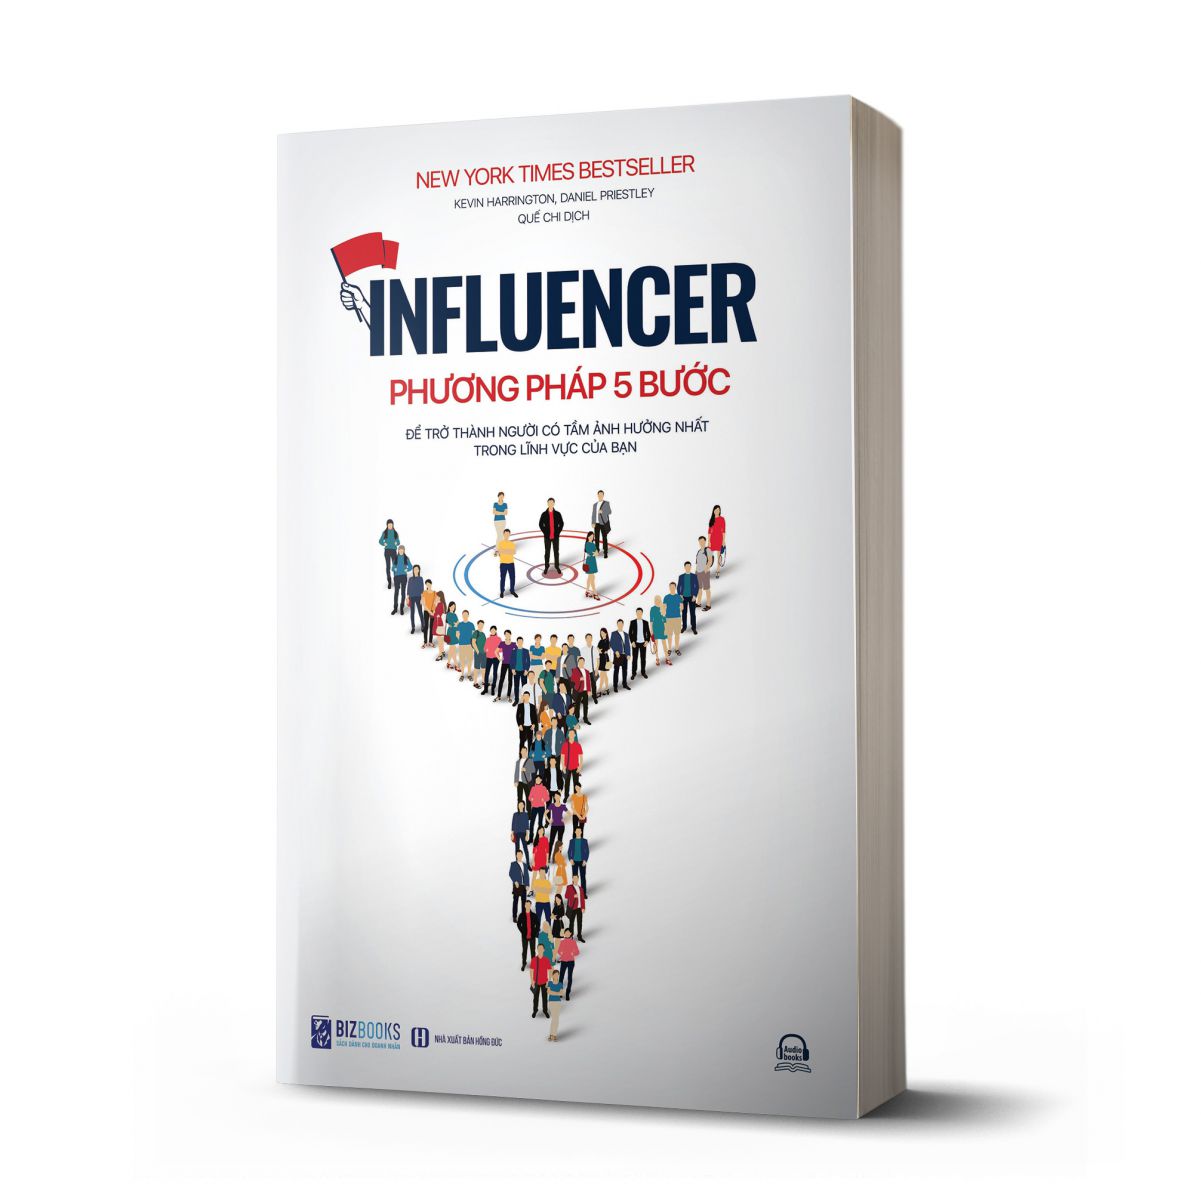  Influencer - Phương pháp 5 bước để trở thành người có tầm ảnh hưởng nhất trong lĩnh vực của bạn 1 